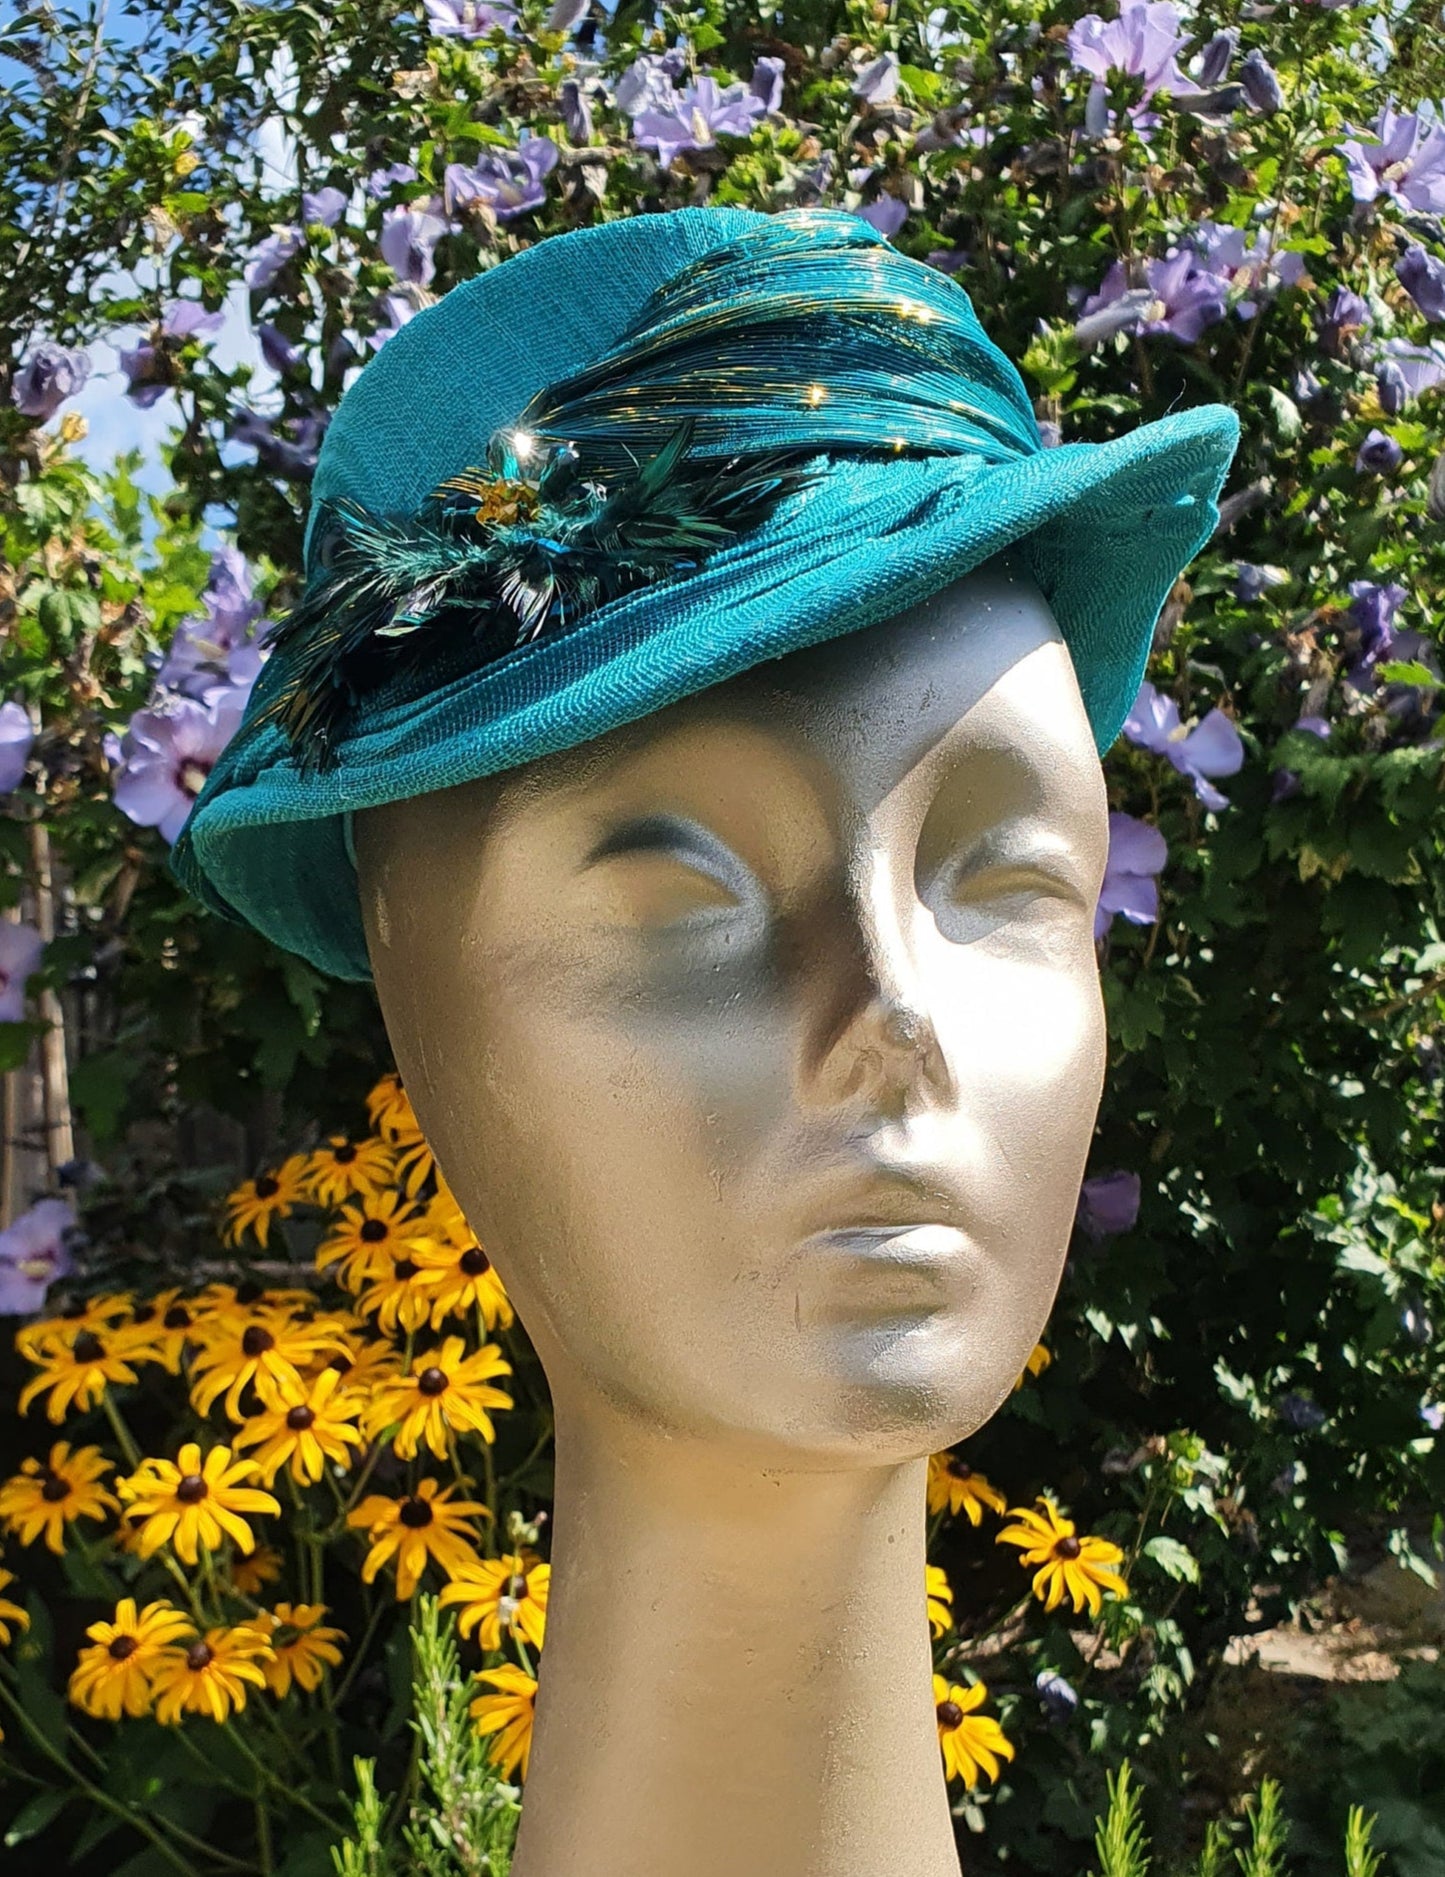 Elegante sombrero hecho a mano de seda sinamay y abacá para mujer, hermoso sombrero verde-azul, eventos, tocado, fiesta